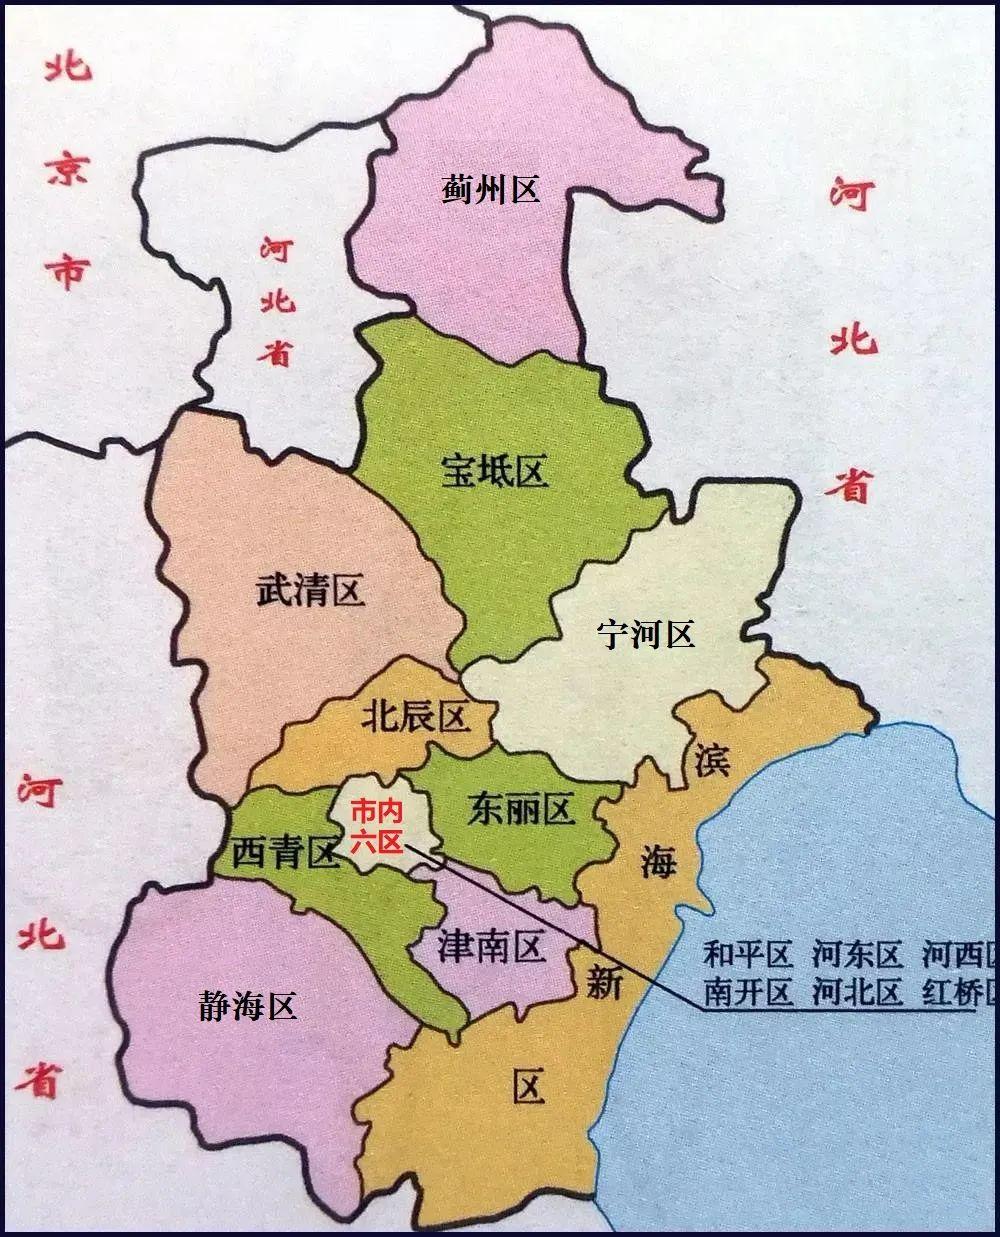 26平方公里,中心城区至外环线所围合区域,是天津市人口密度最高的地区